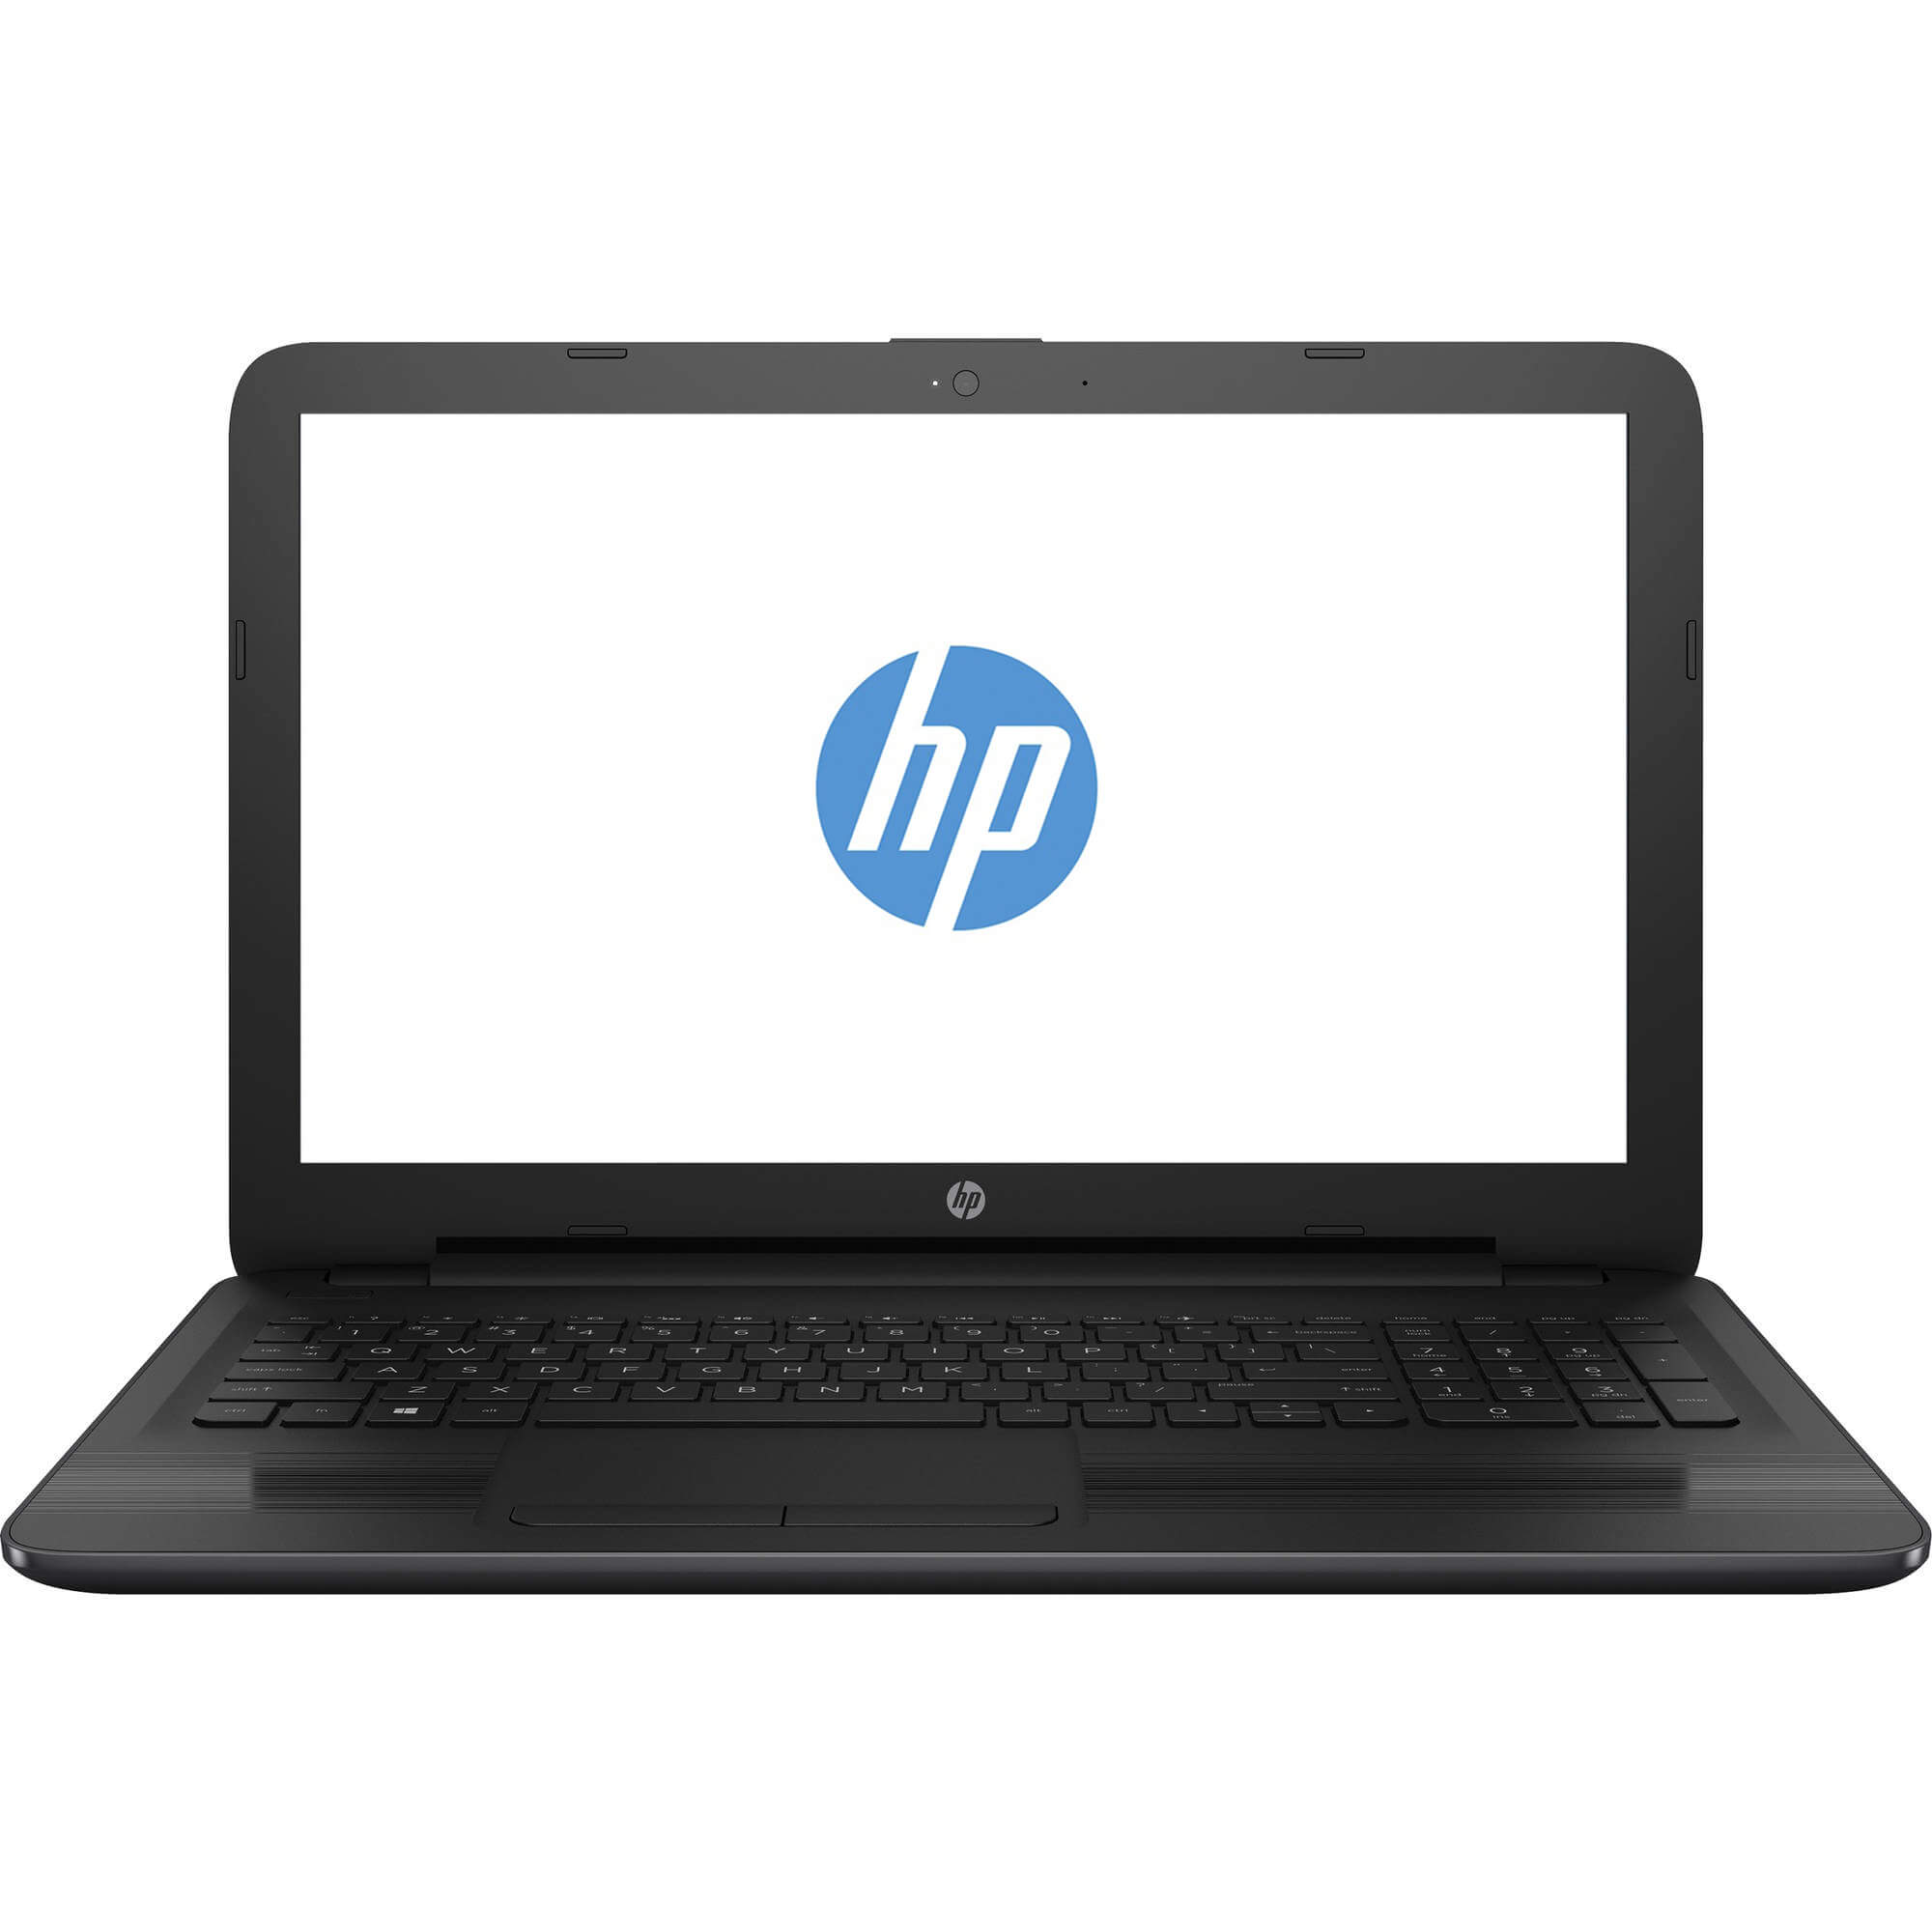  Laptop HP 255 G5, AMD E2-7110, 4GB DDR3, HDD 500GB, AMD Radeon R2, FreeDOS 